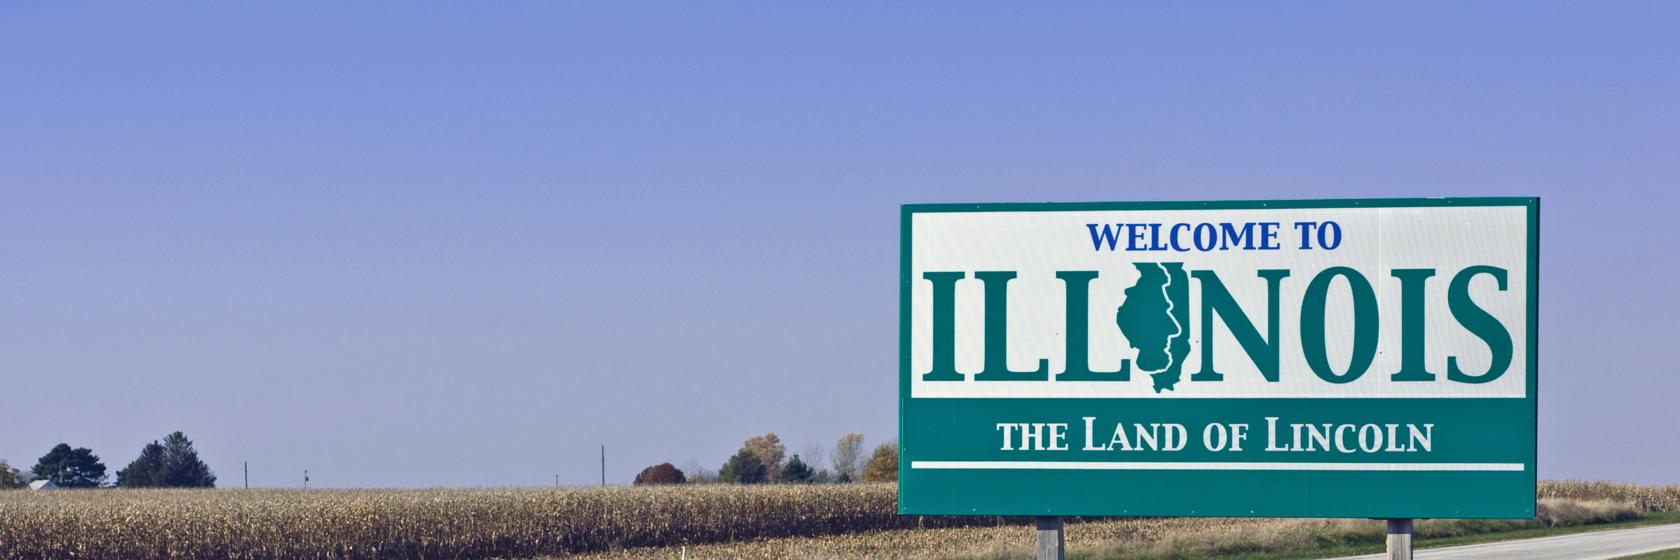 Illinois, Midwest USA